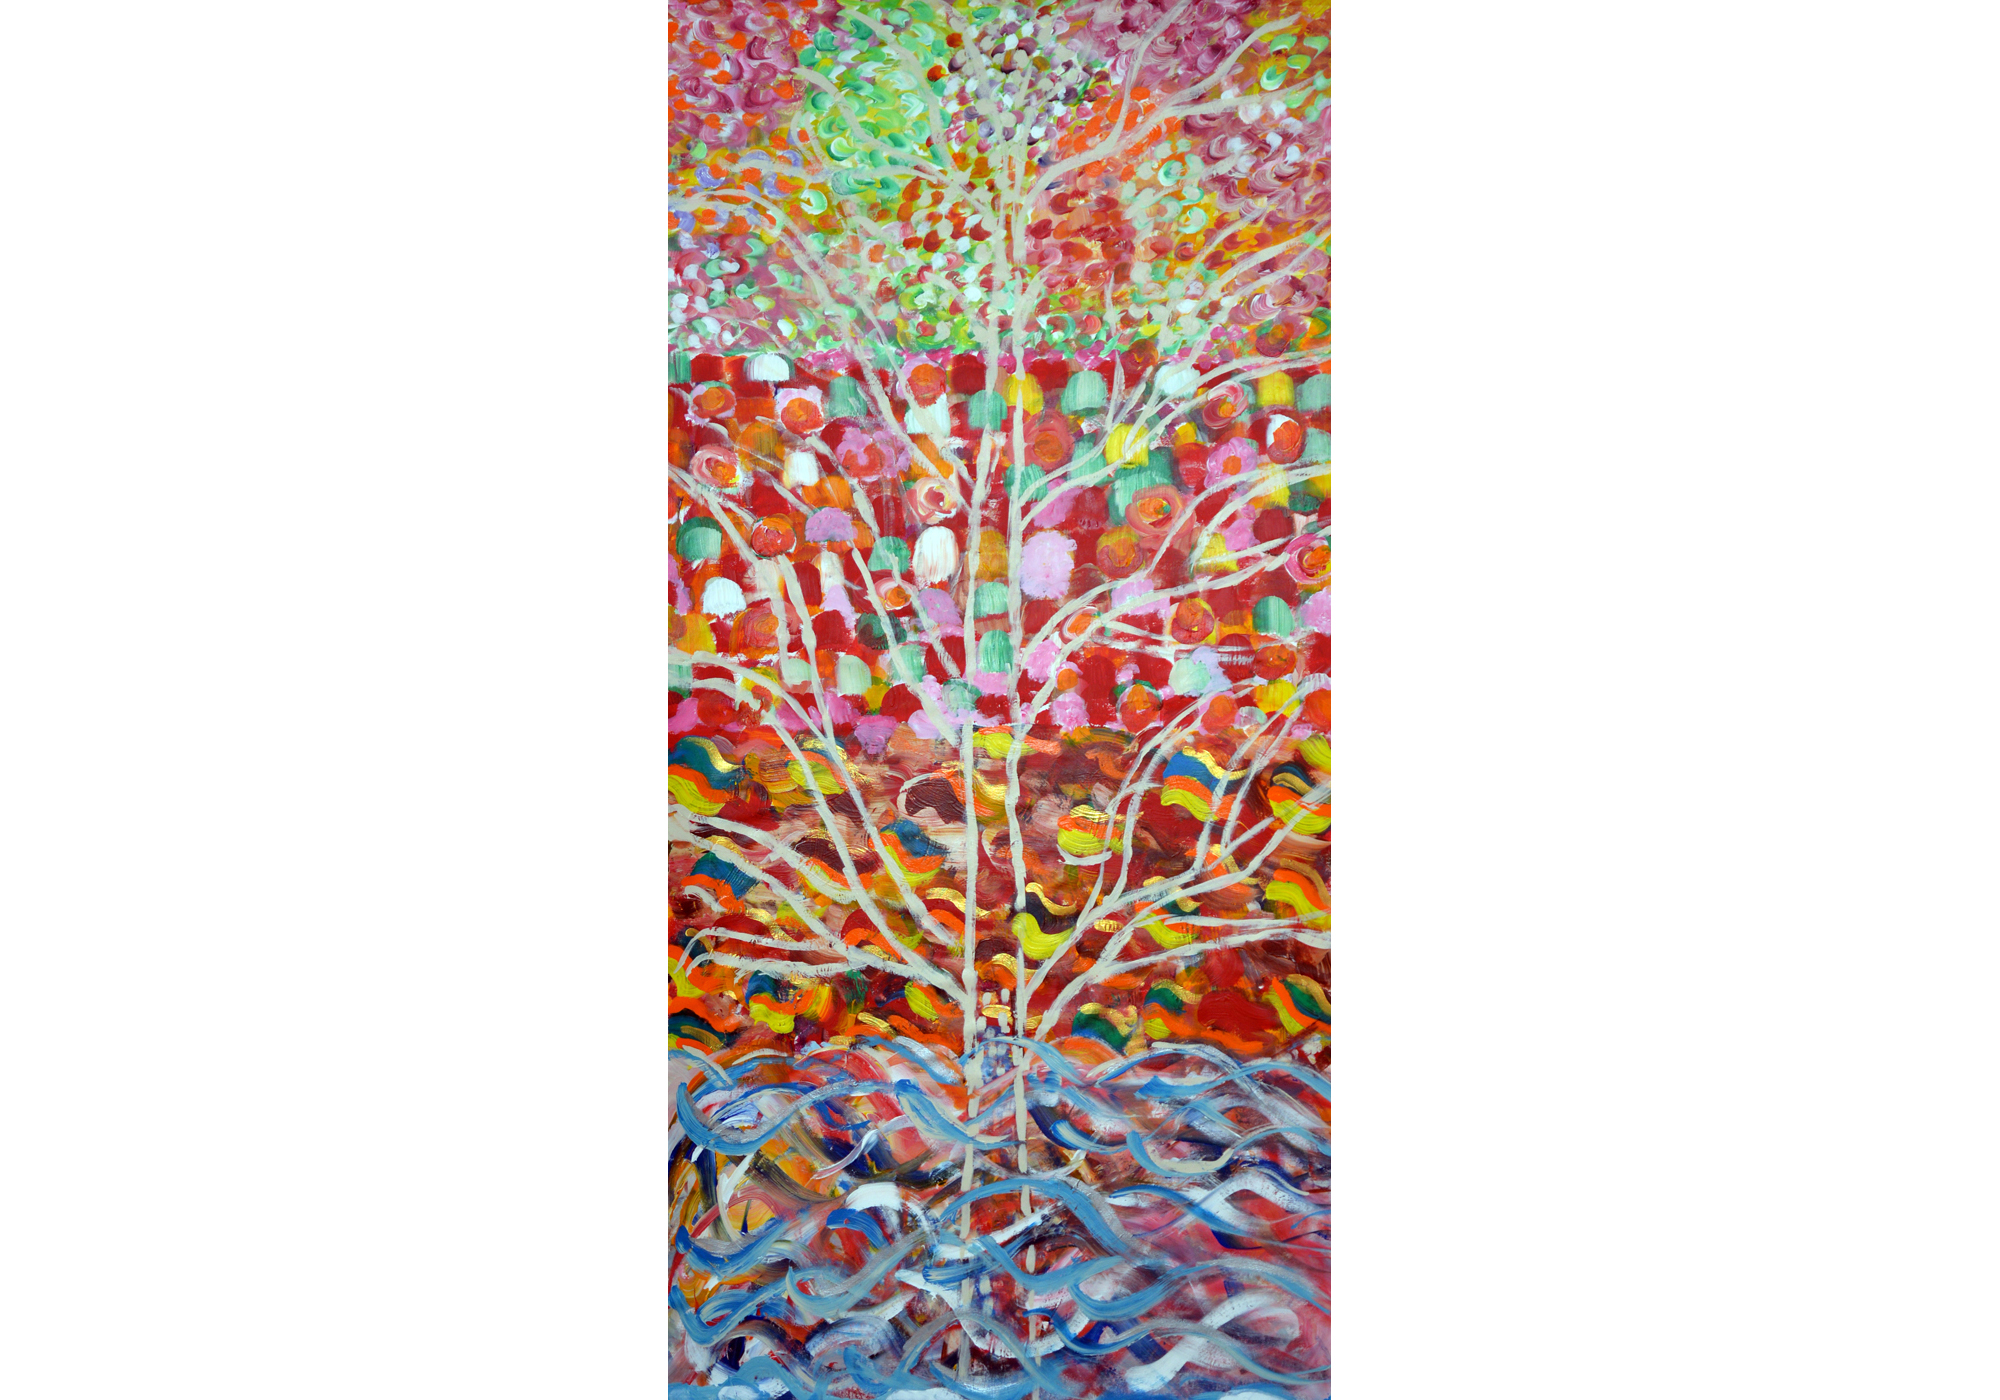 Four Seasons, acrylic on canvas, 72" x 36", 2015